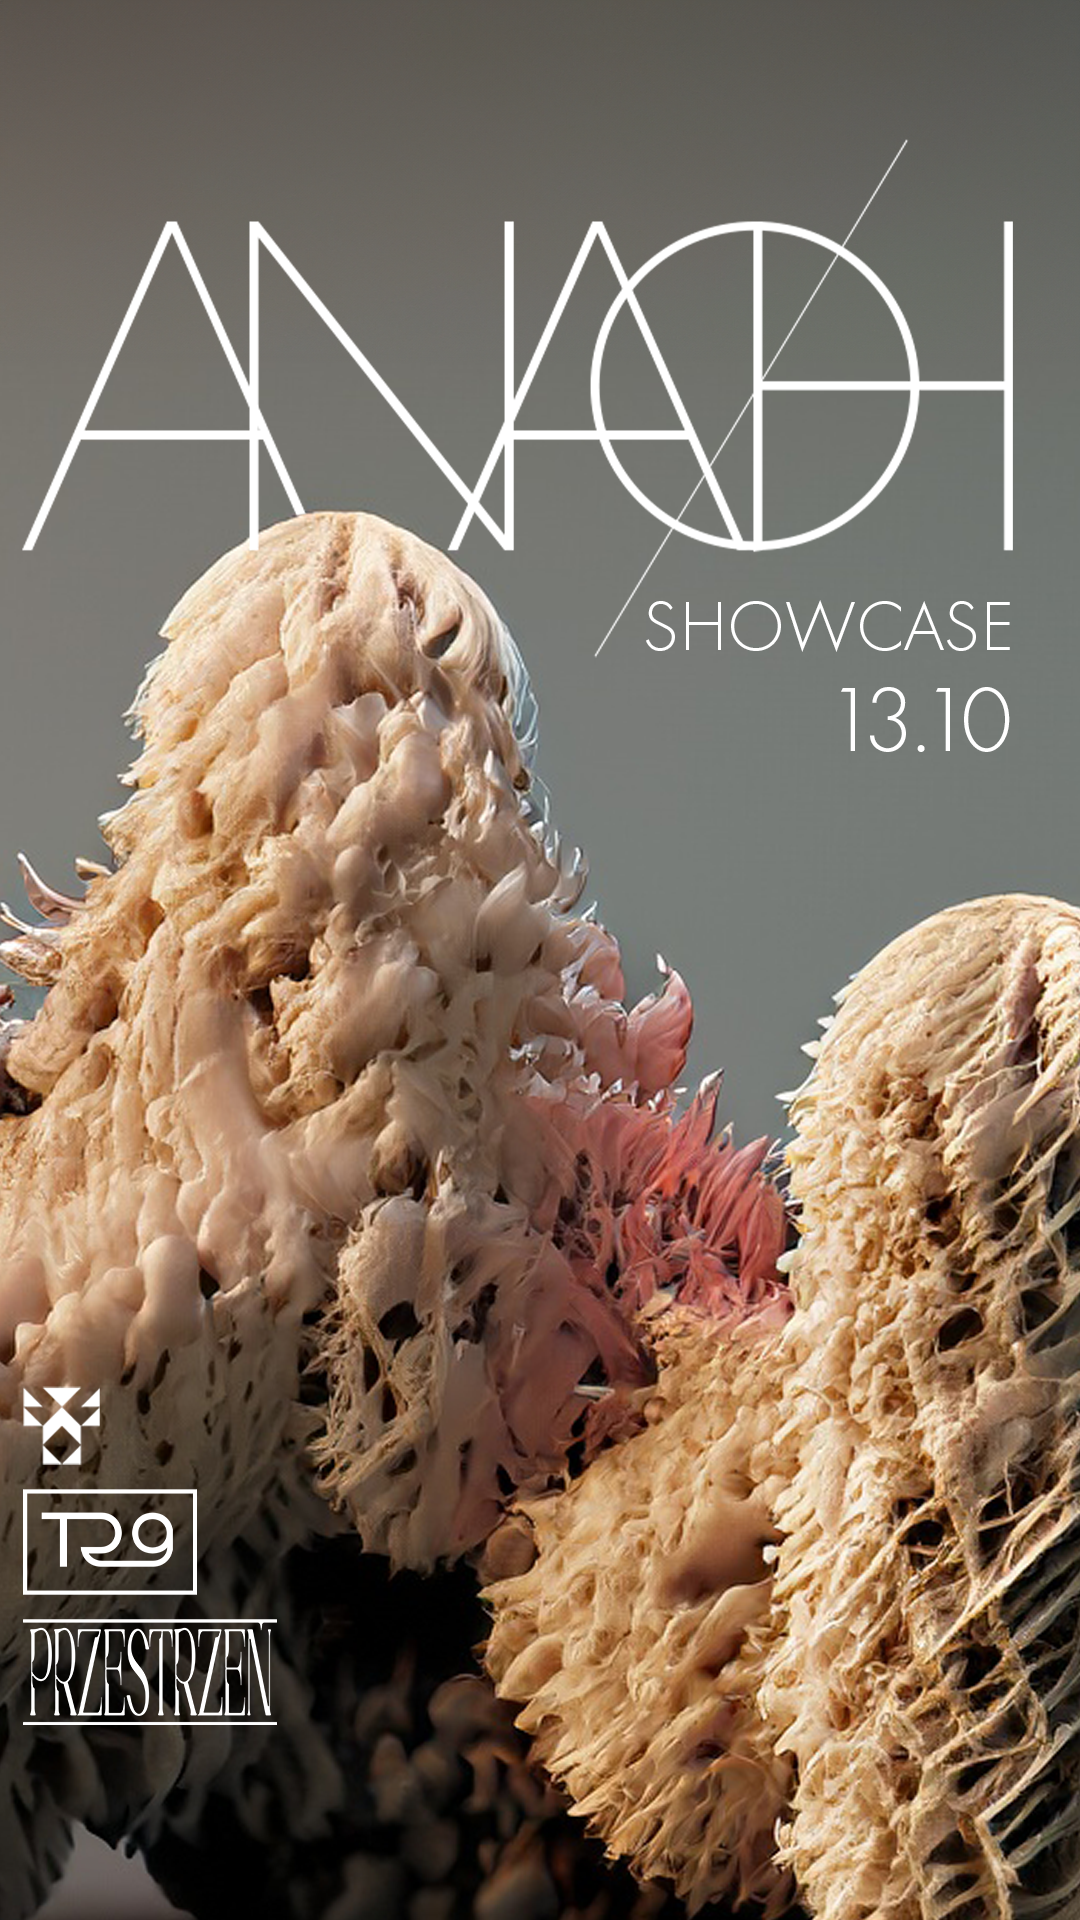 ANAØH Showcase by _VOID x Przestrzeń - フライヤー表